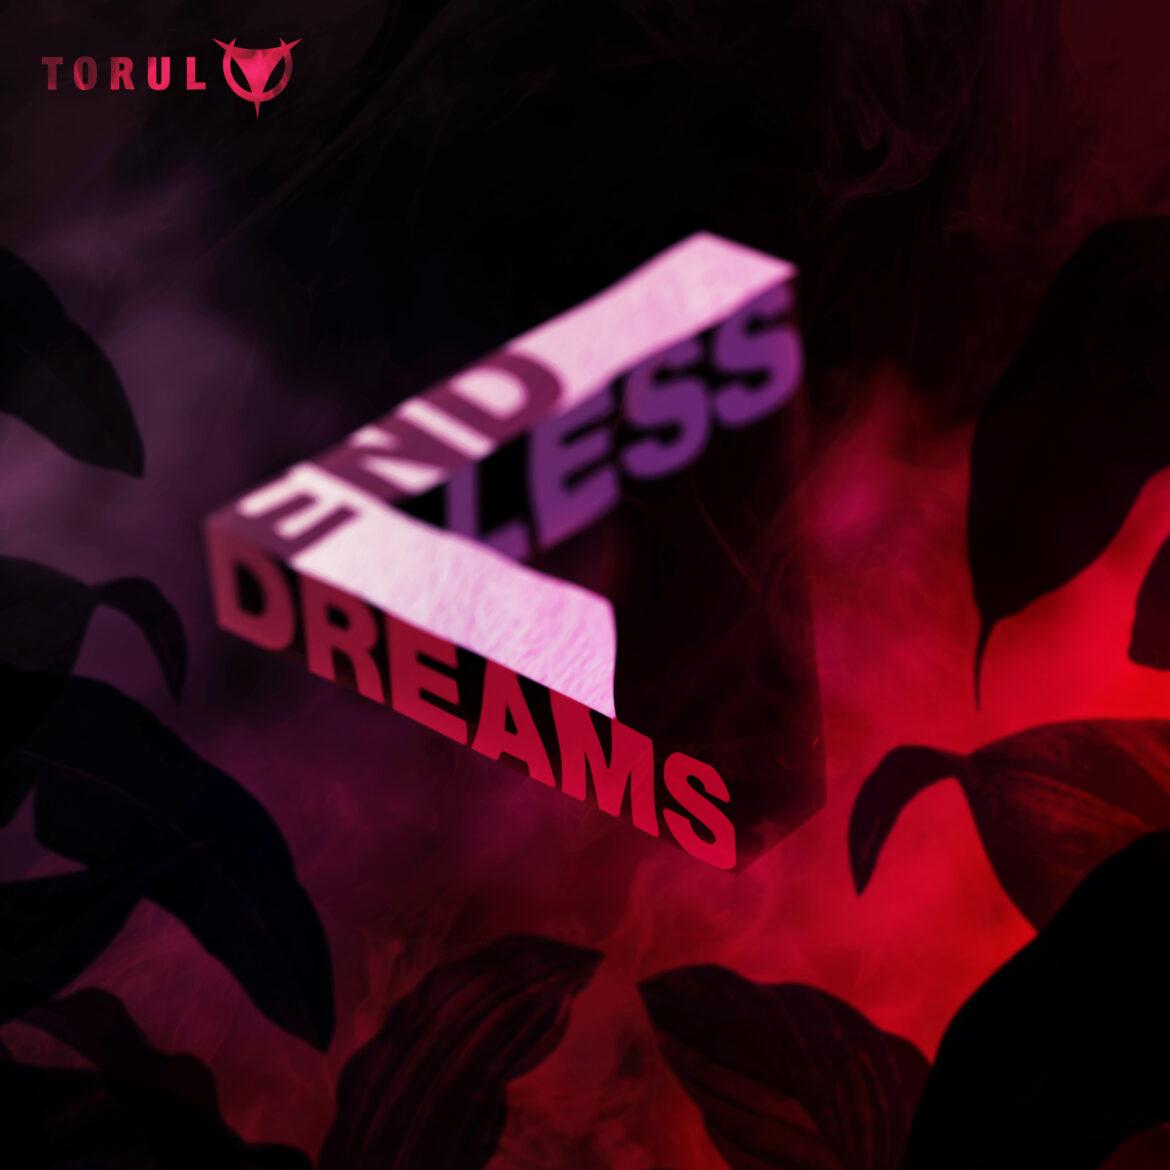 Cover des Albums "Endless Dreams" von TORUL